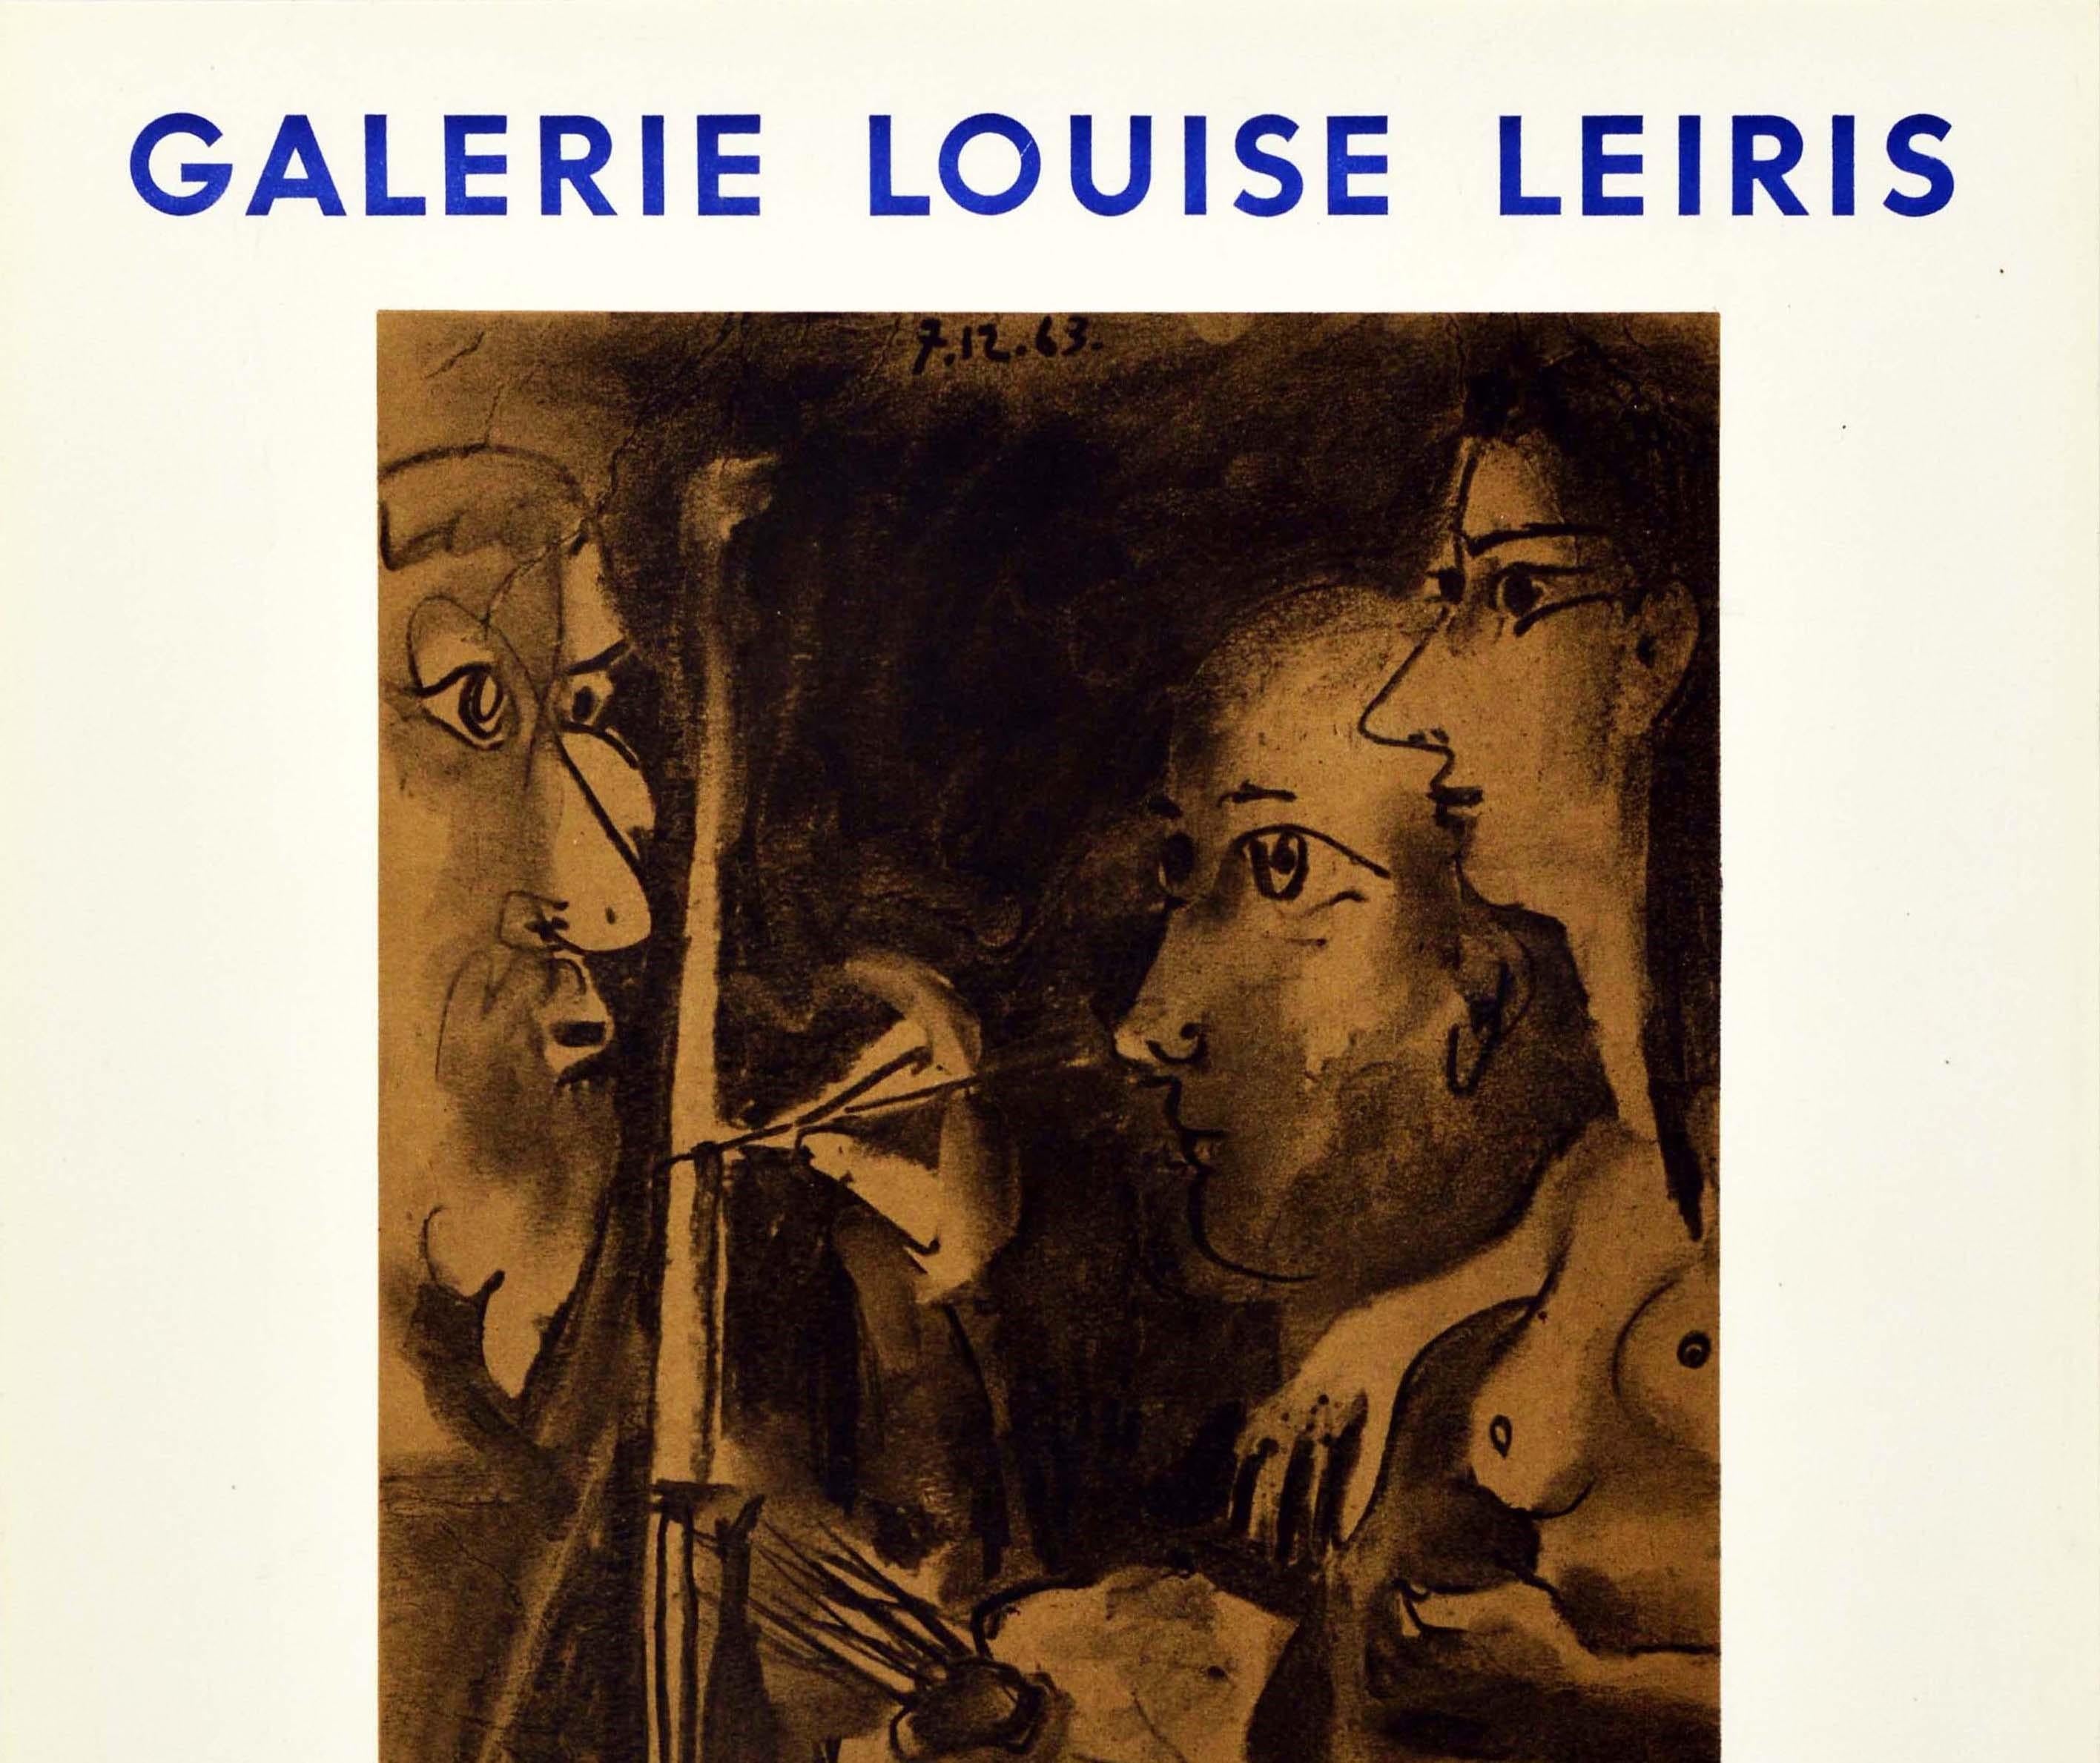 Affiche publicitaire originale pour Picasso Peintures 1962-1963, une exposition de peintures de l'artiste et sculpteur espagnol Pablo Picasso (1881-1973), du 15 janvier au 15 février 1964 à la Galerie Louise Leiris à Paris. Représentation abstraite